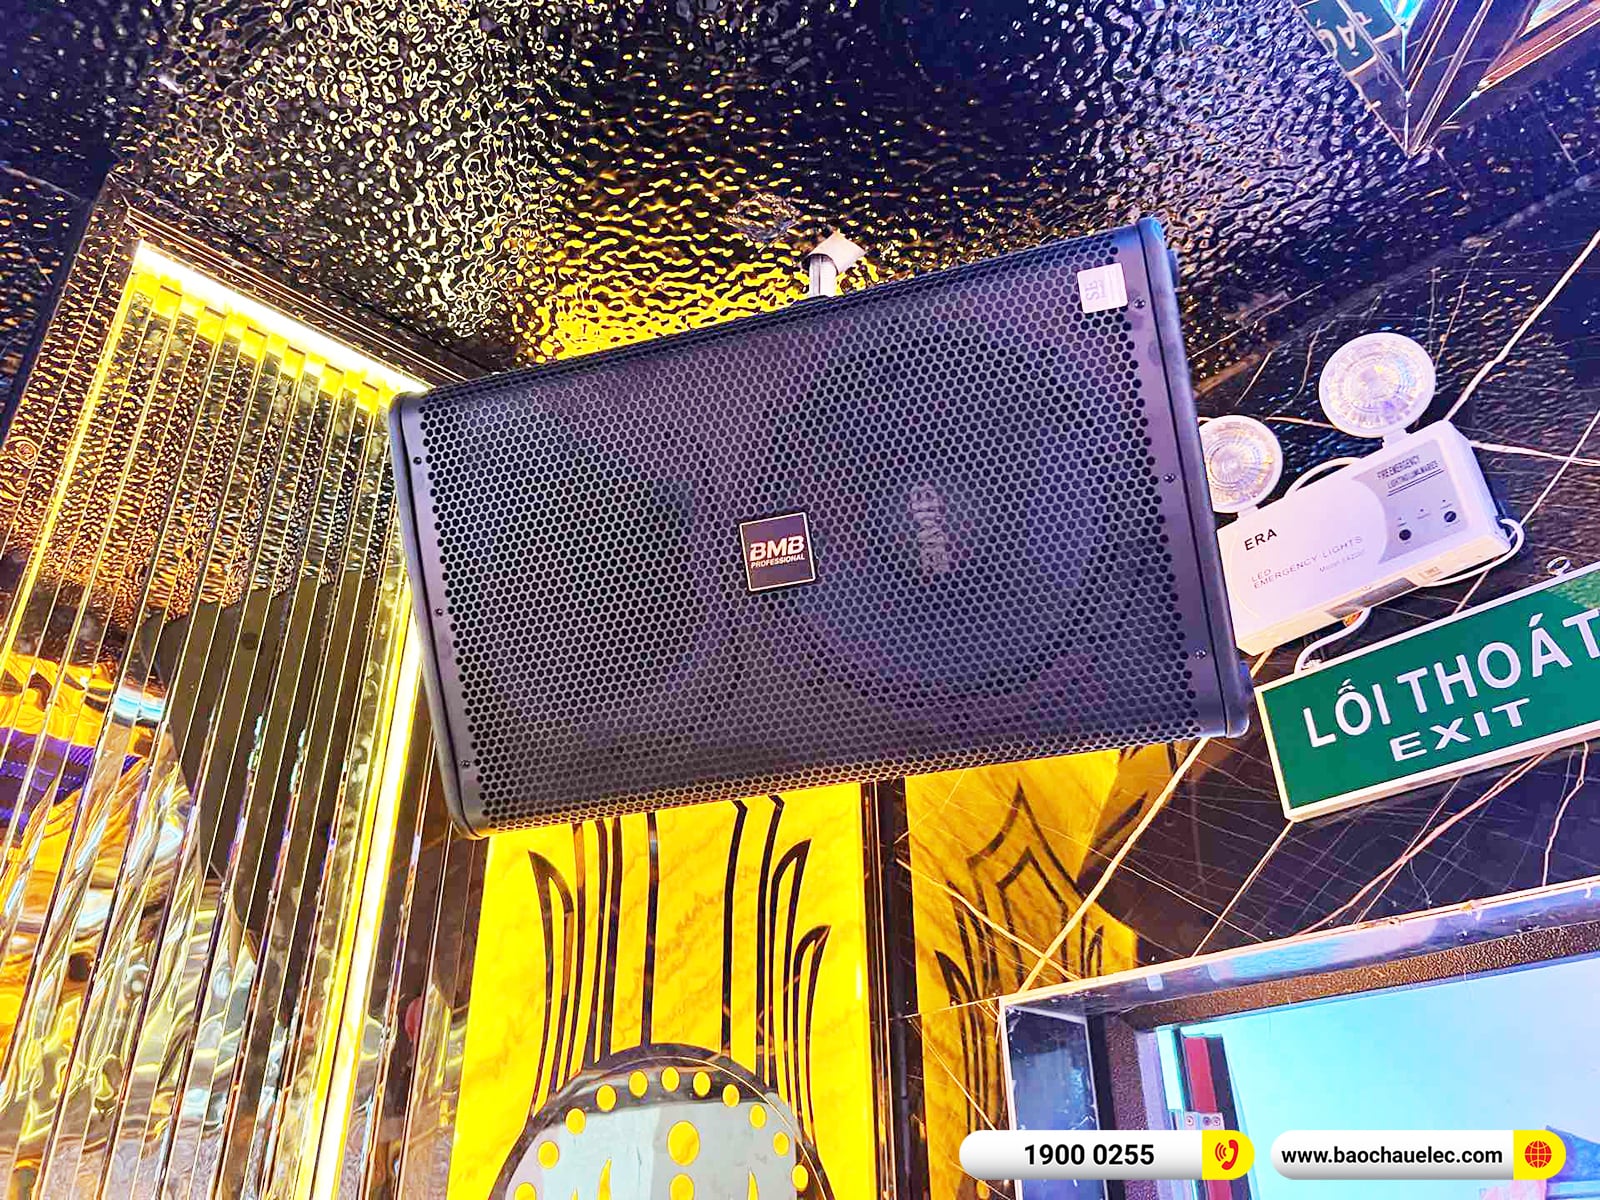 Lắp đặt thêm 3 phòng hát kinh doanh BMB hơn 400tr cho quán karaoke Dấu Ấn 2 tại Quảng Bình (BMB 1212SE, JBL KP4012 G2, KX180A,…)